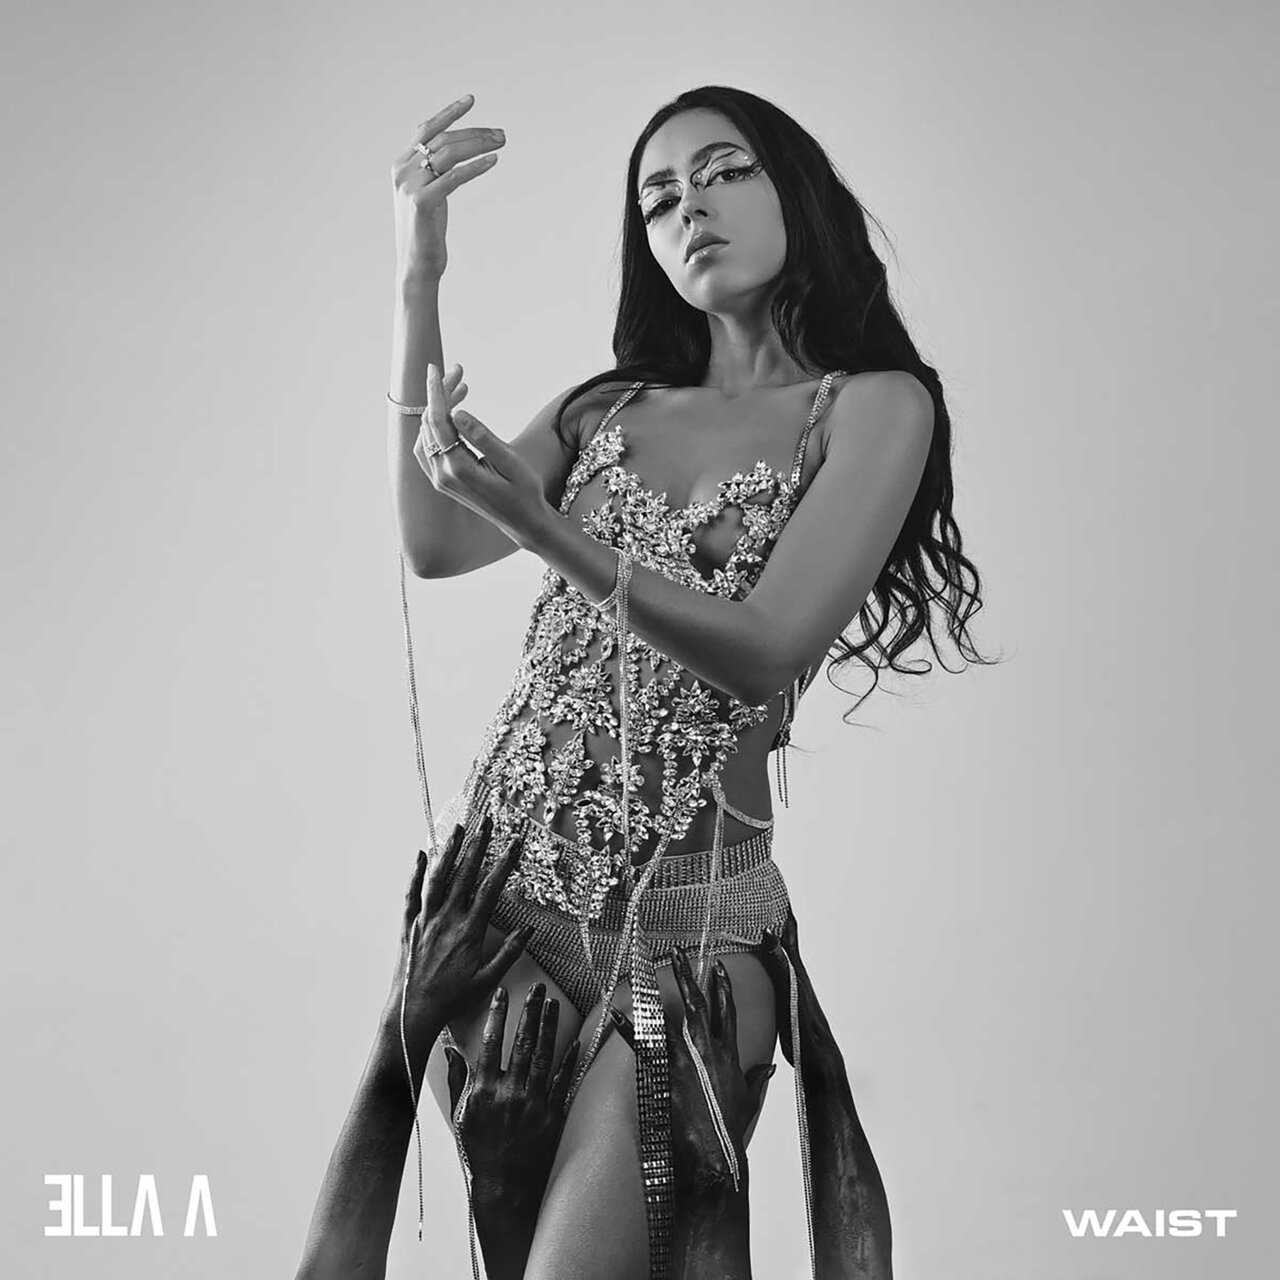 Ella A — Waist cover artwork